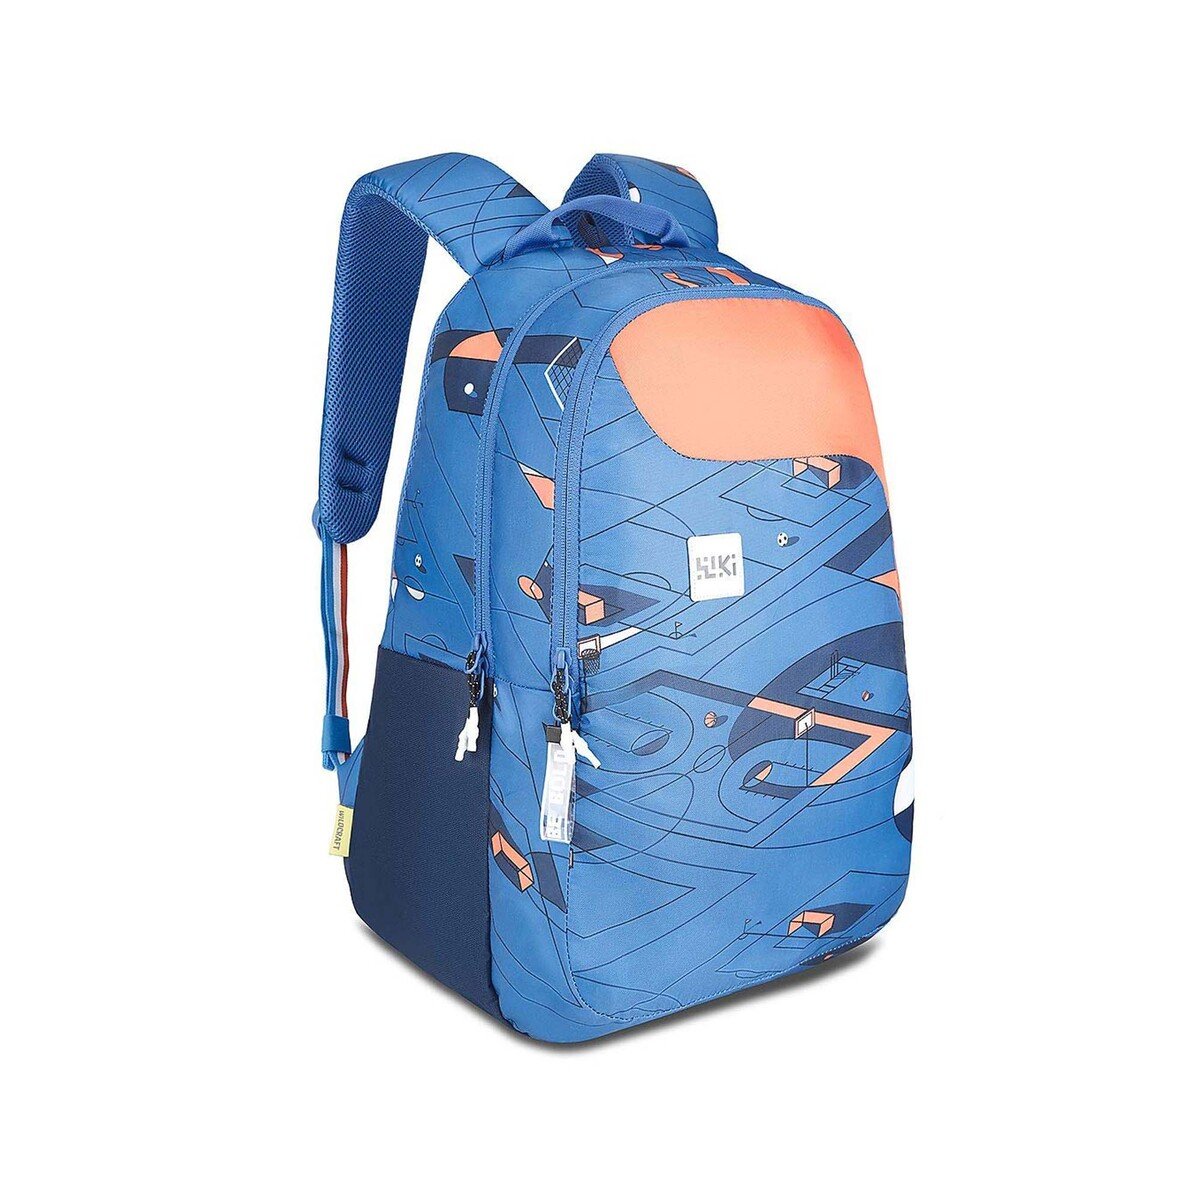 Wildcraft School Backpack Pack 1 18" Blue